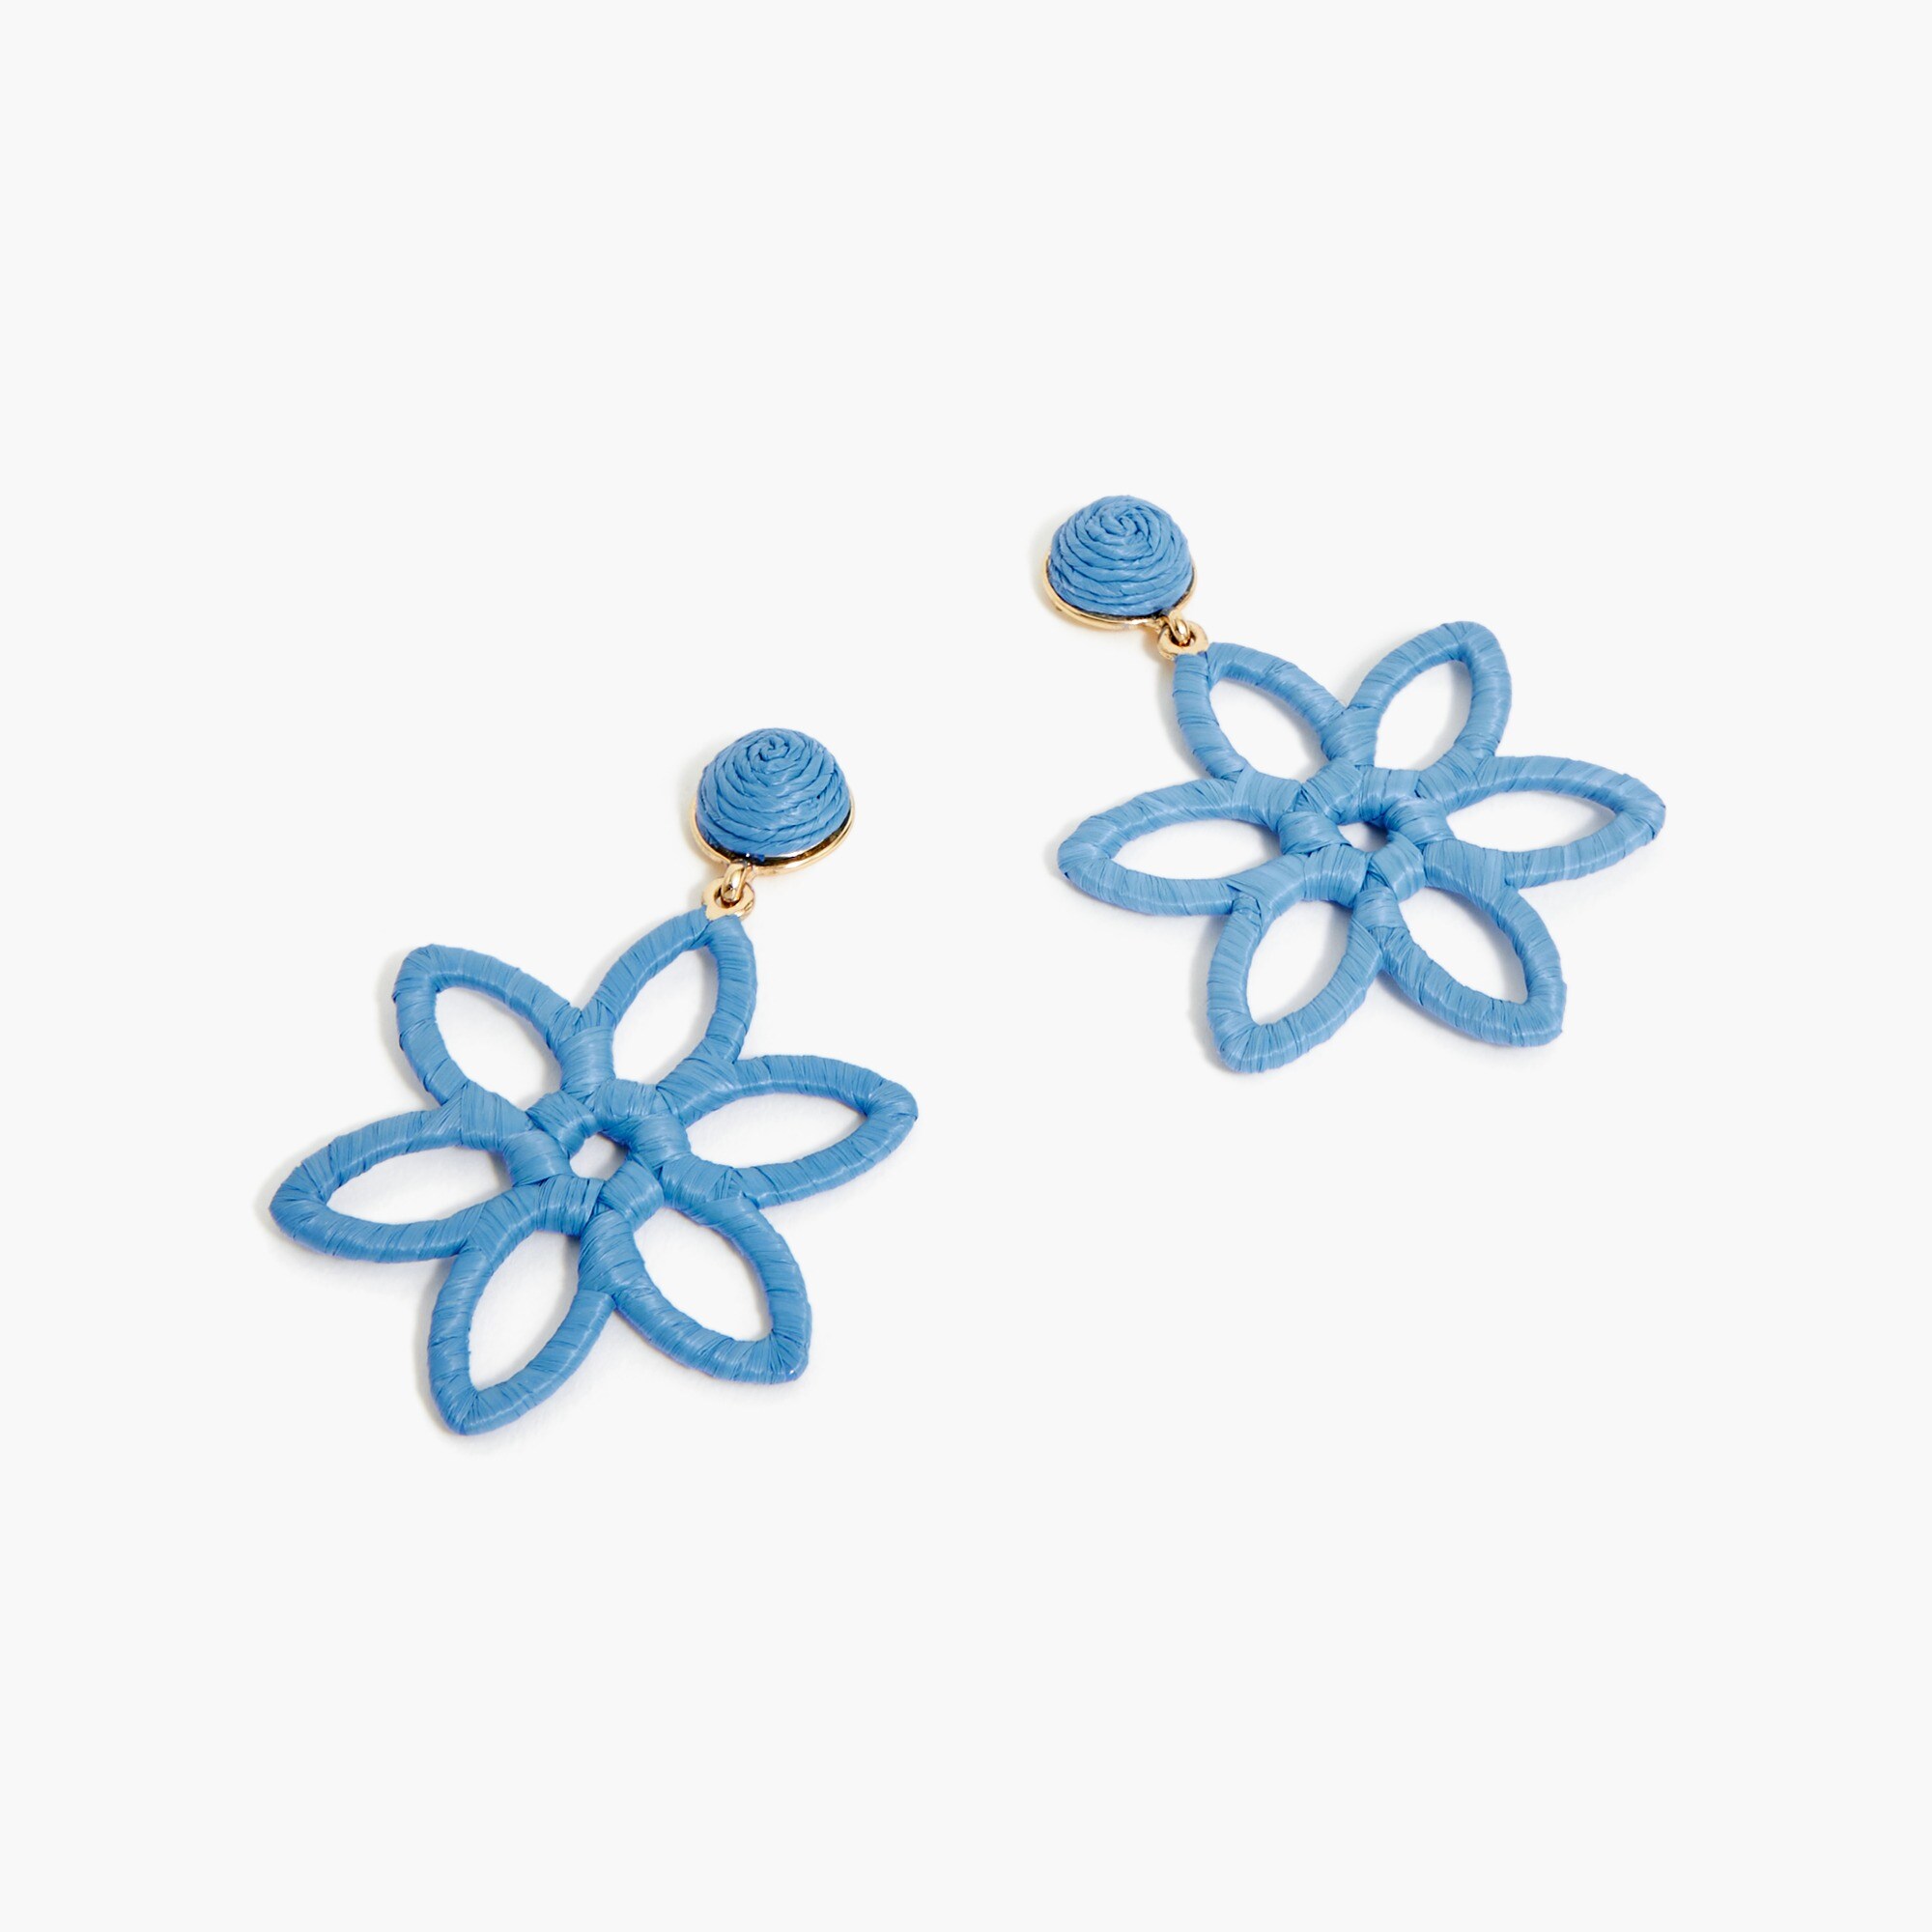  Wrapped flower statement earrings